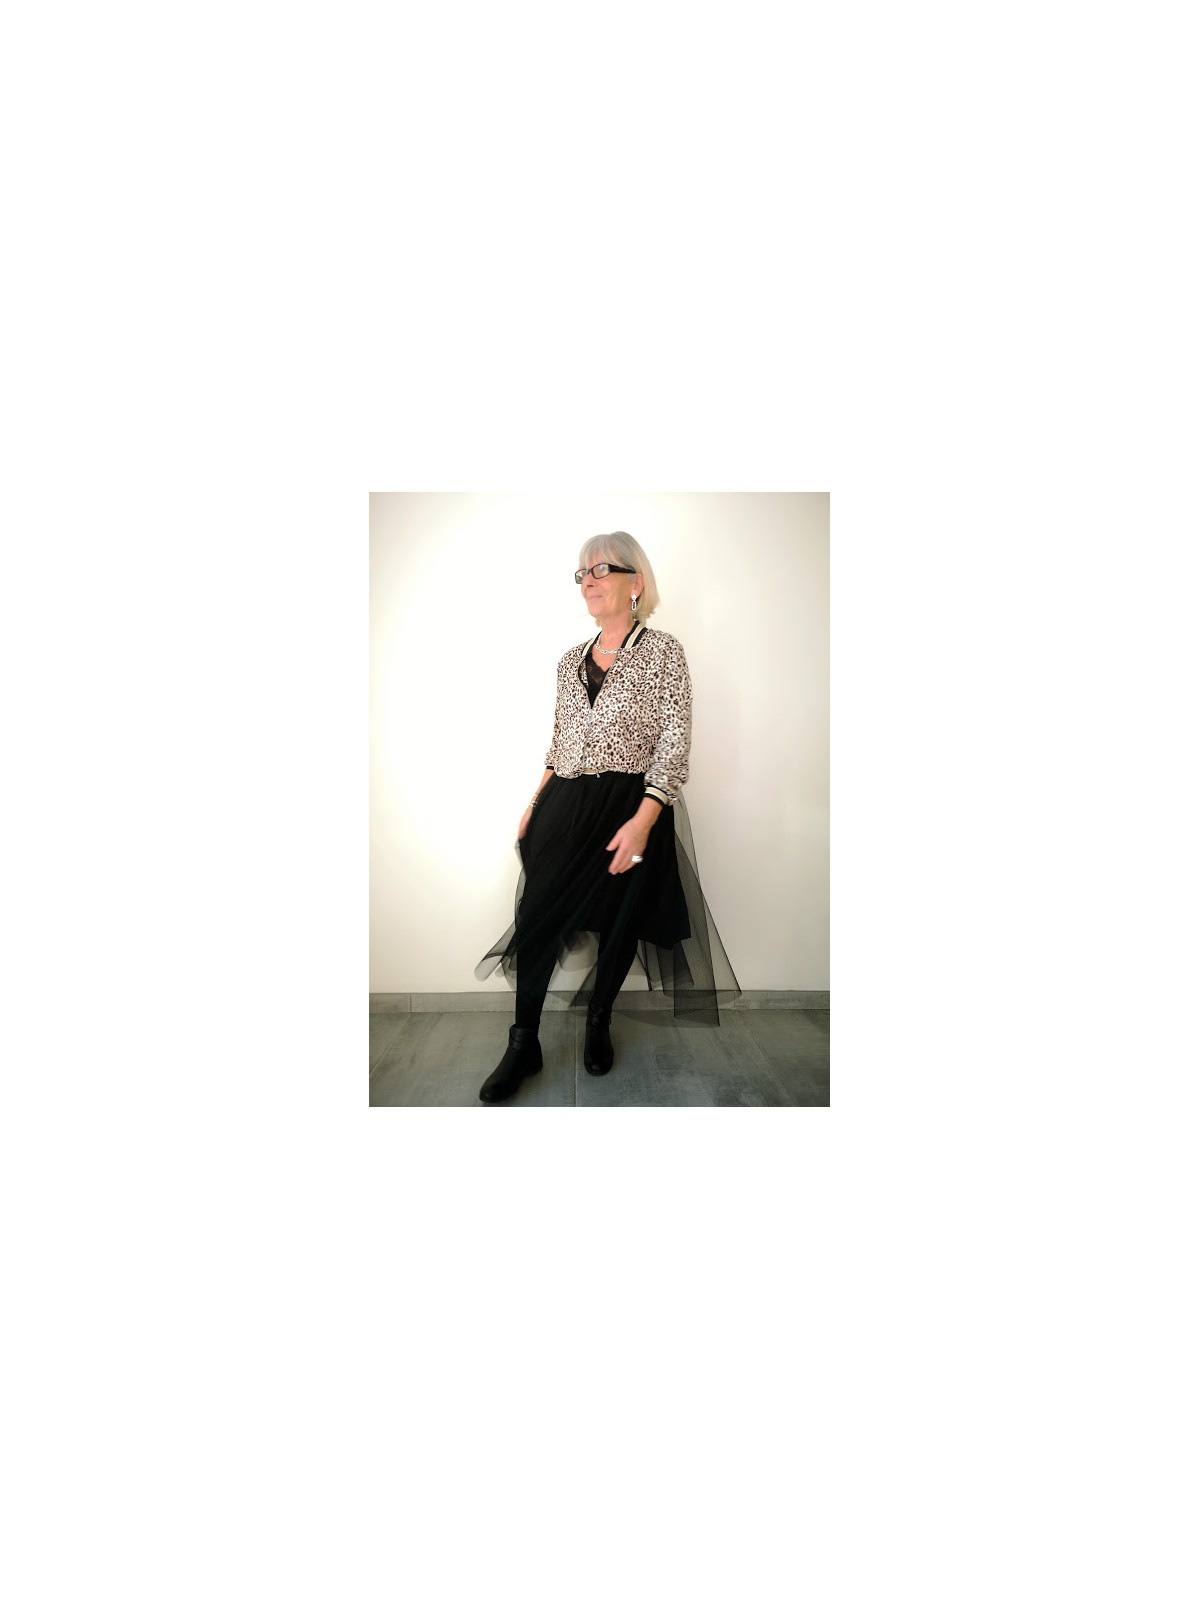 Jupe doublée avec taille élastique l 2 vue de profil l Tilleulmenthe mode boutique de vêtements femme en ligne